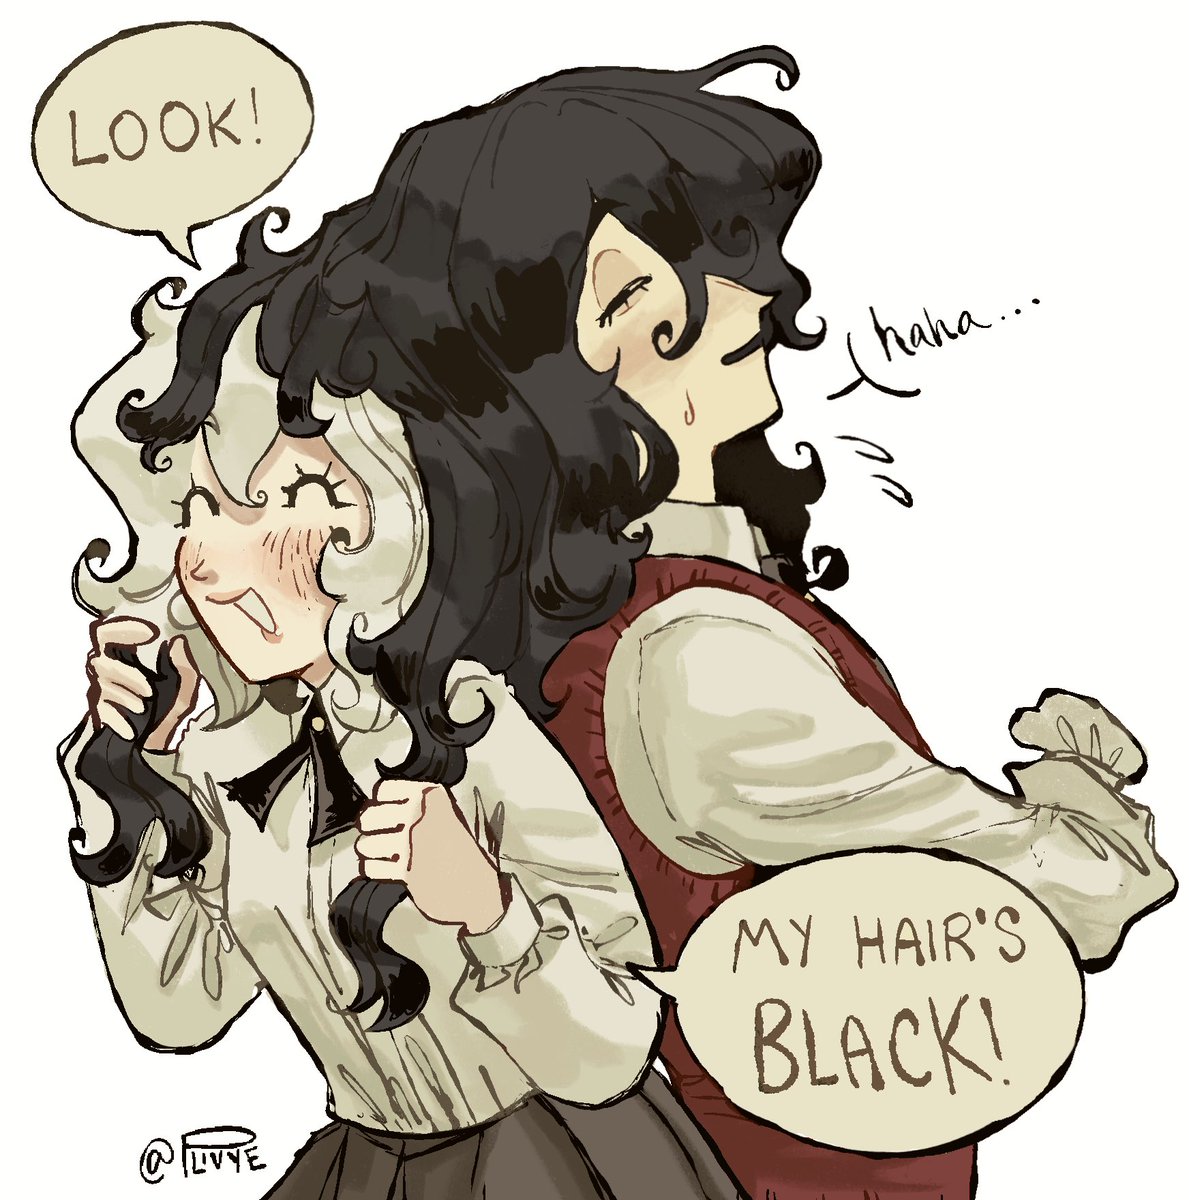 VIX’S HAIR IS BLACK!